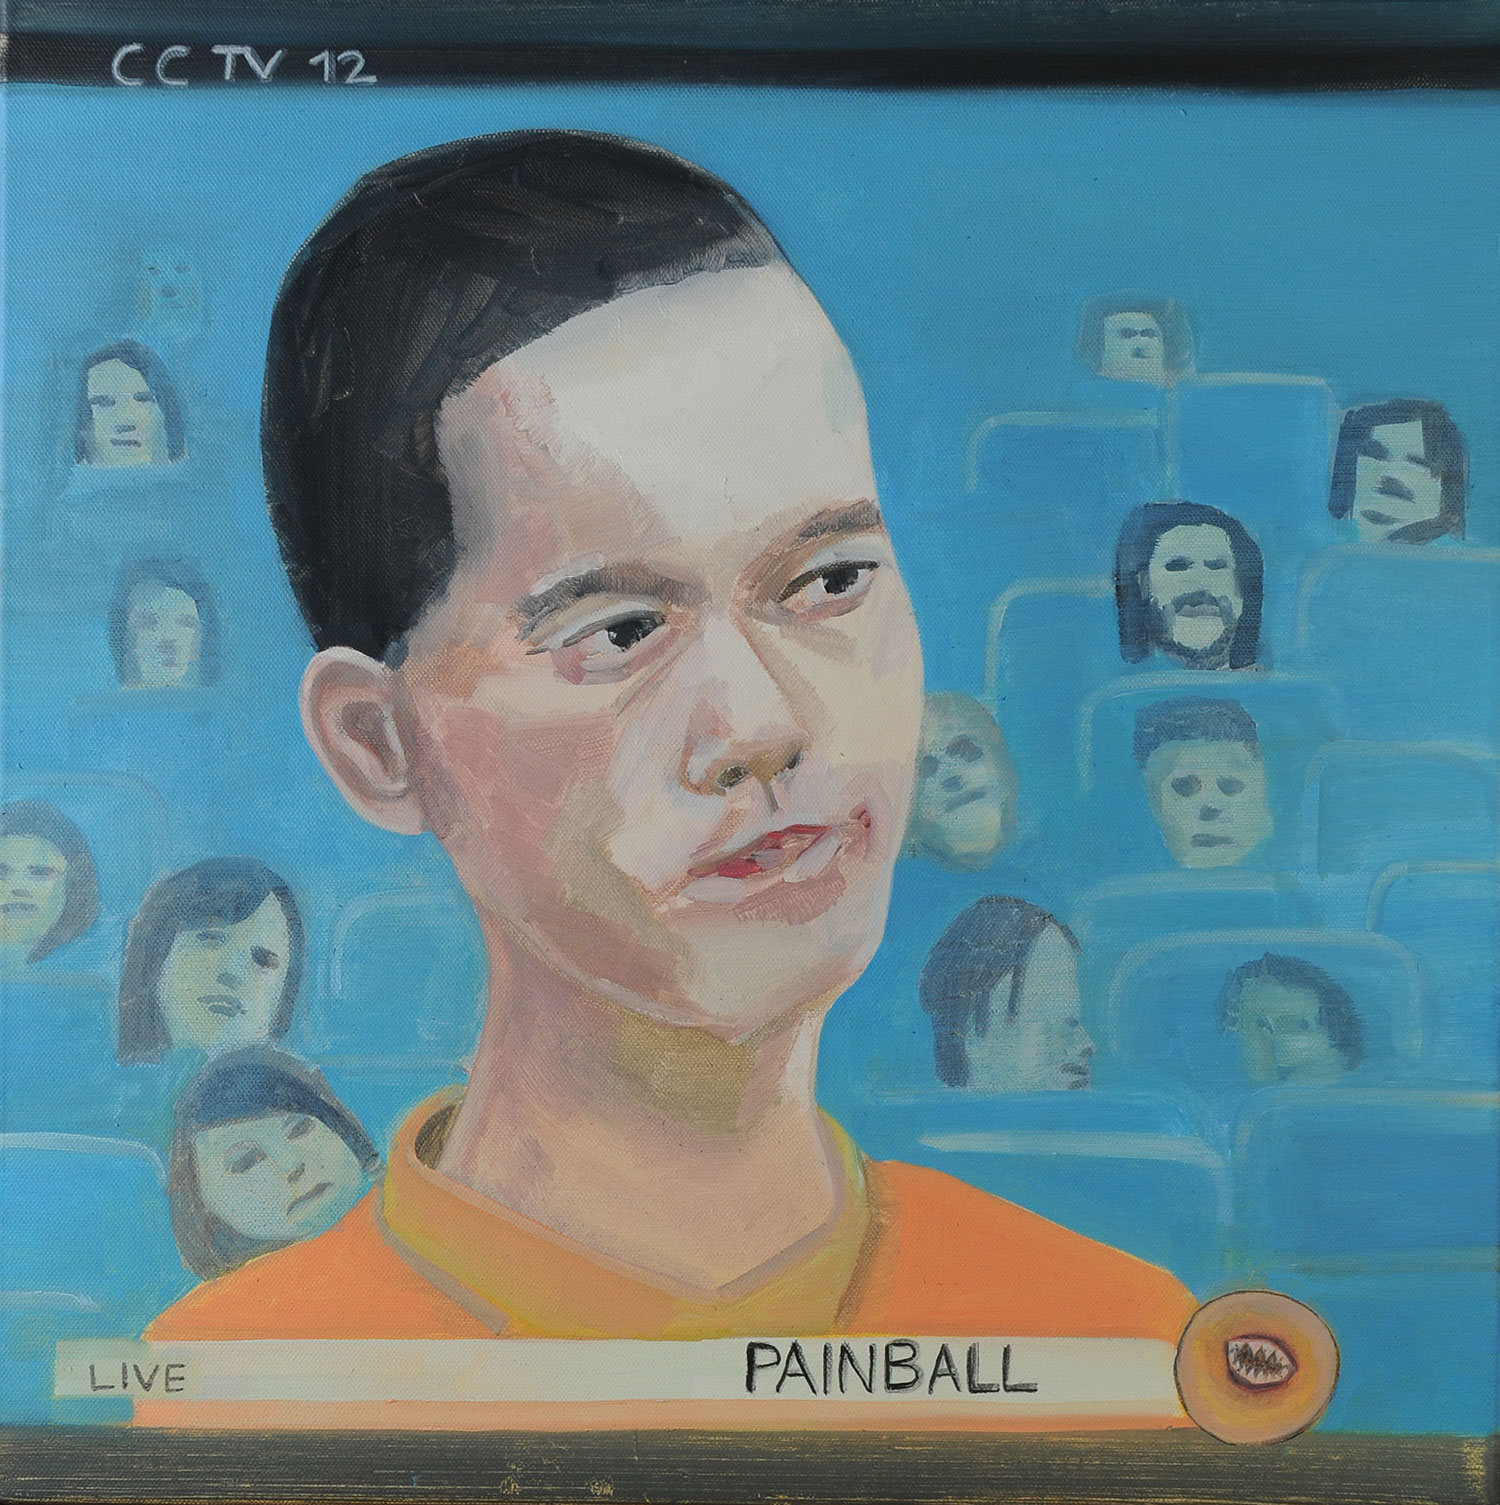 Painball (CCTV 12)